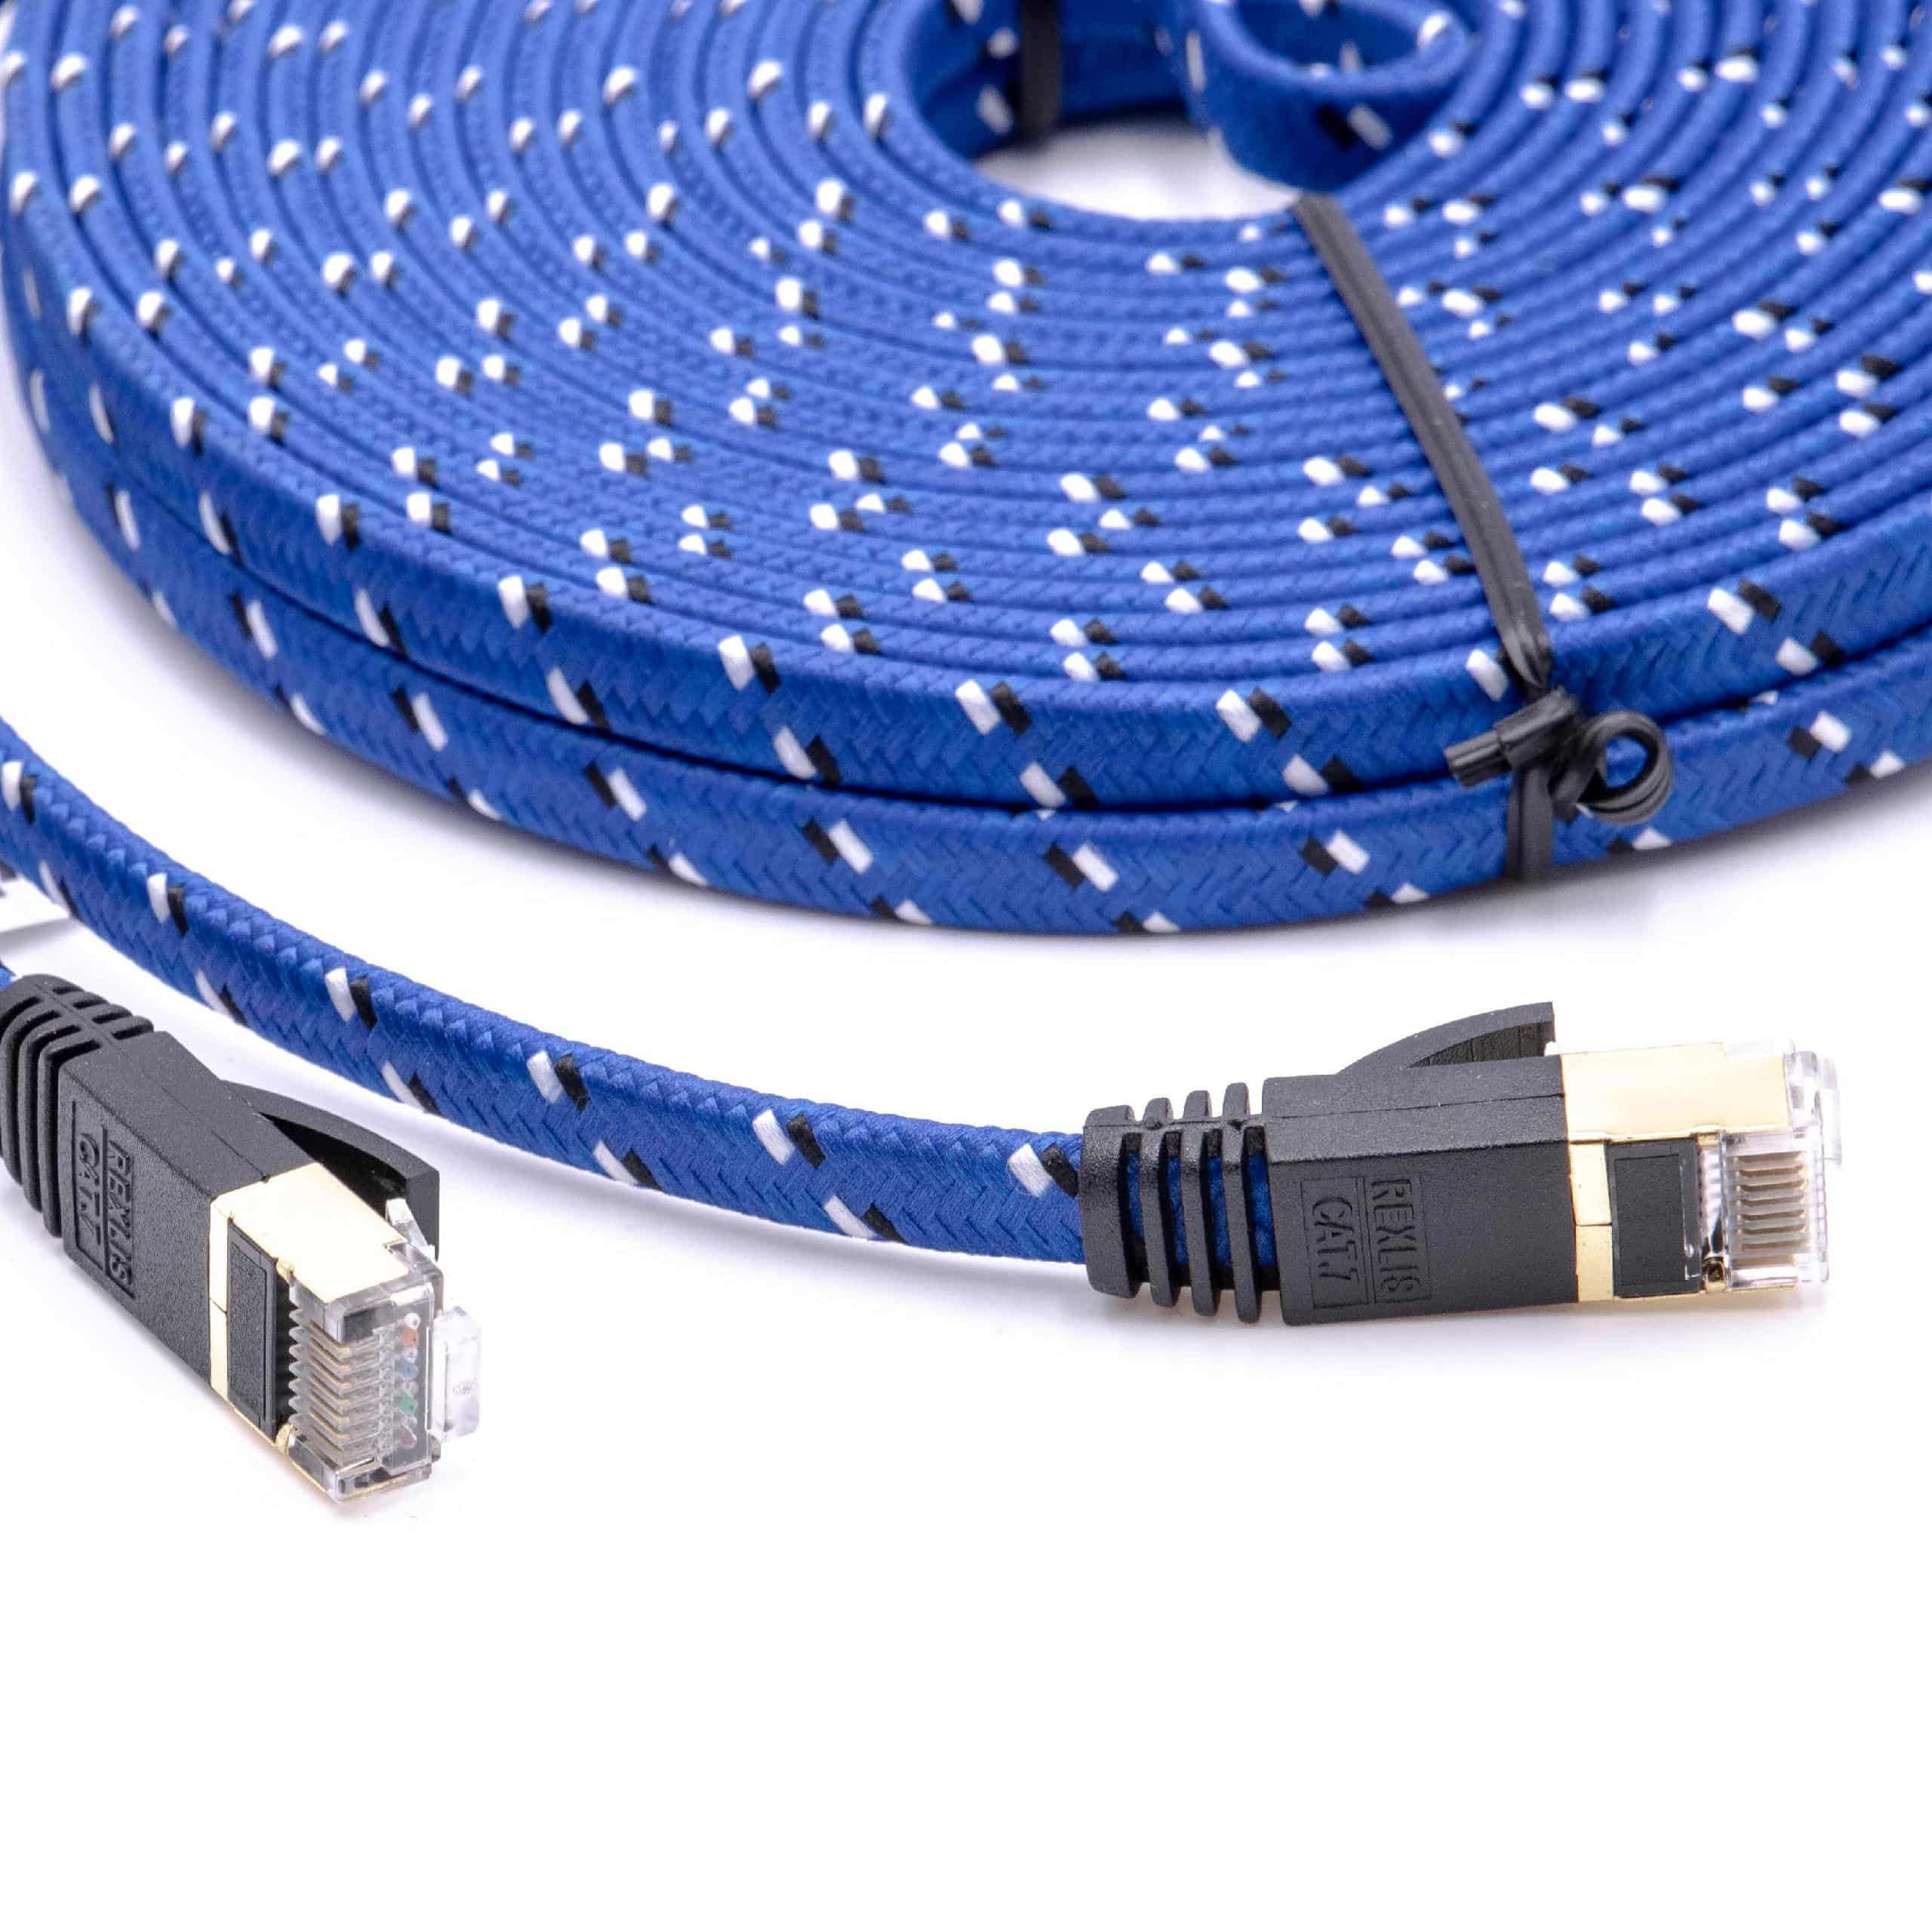 Cable de red de Ethernet, LAN, cable patch Cat7 10m azul cable plano de tendido